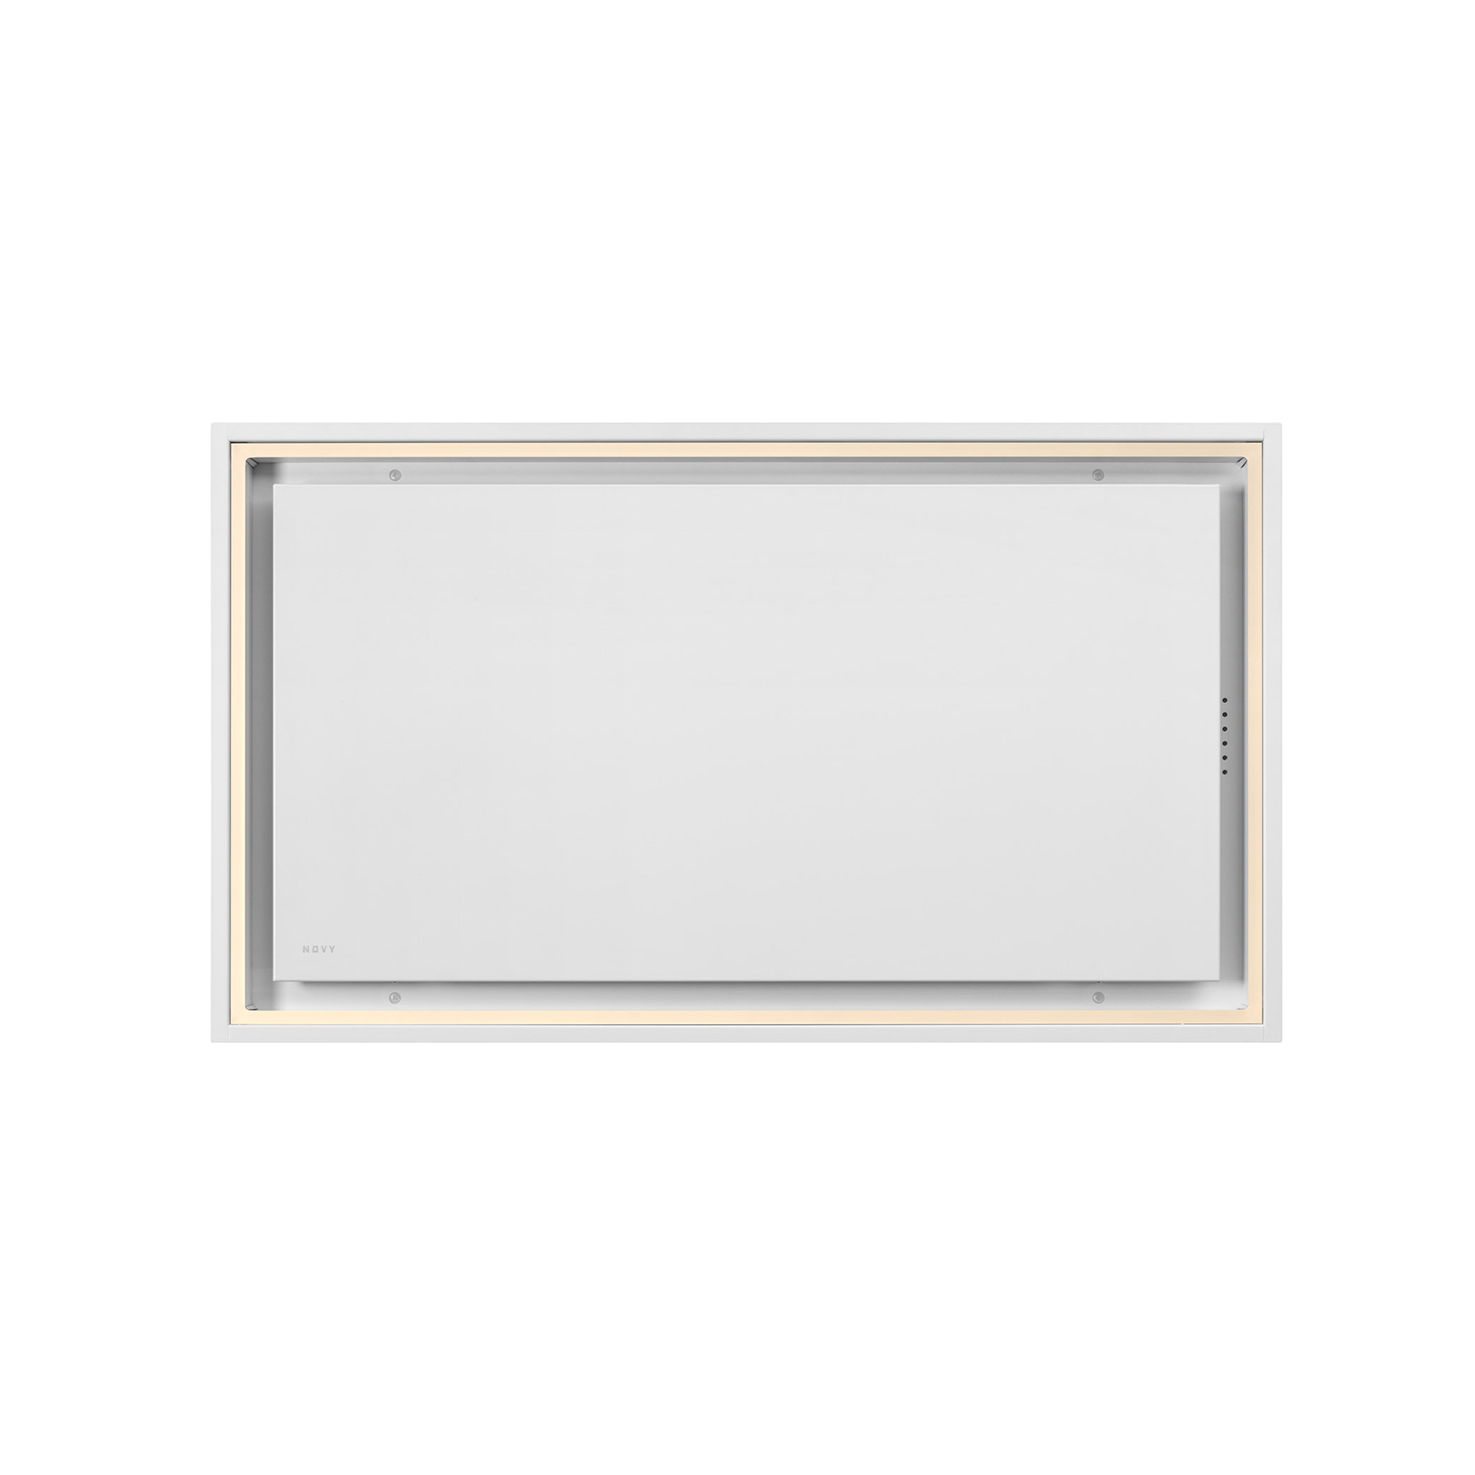 6911 Ceiling unit Pureline Pro Compact  White 